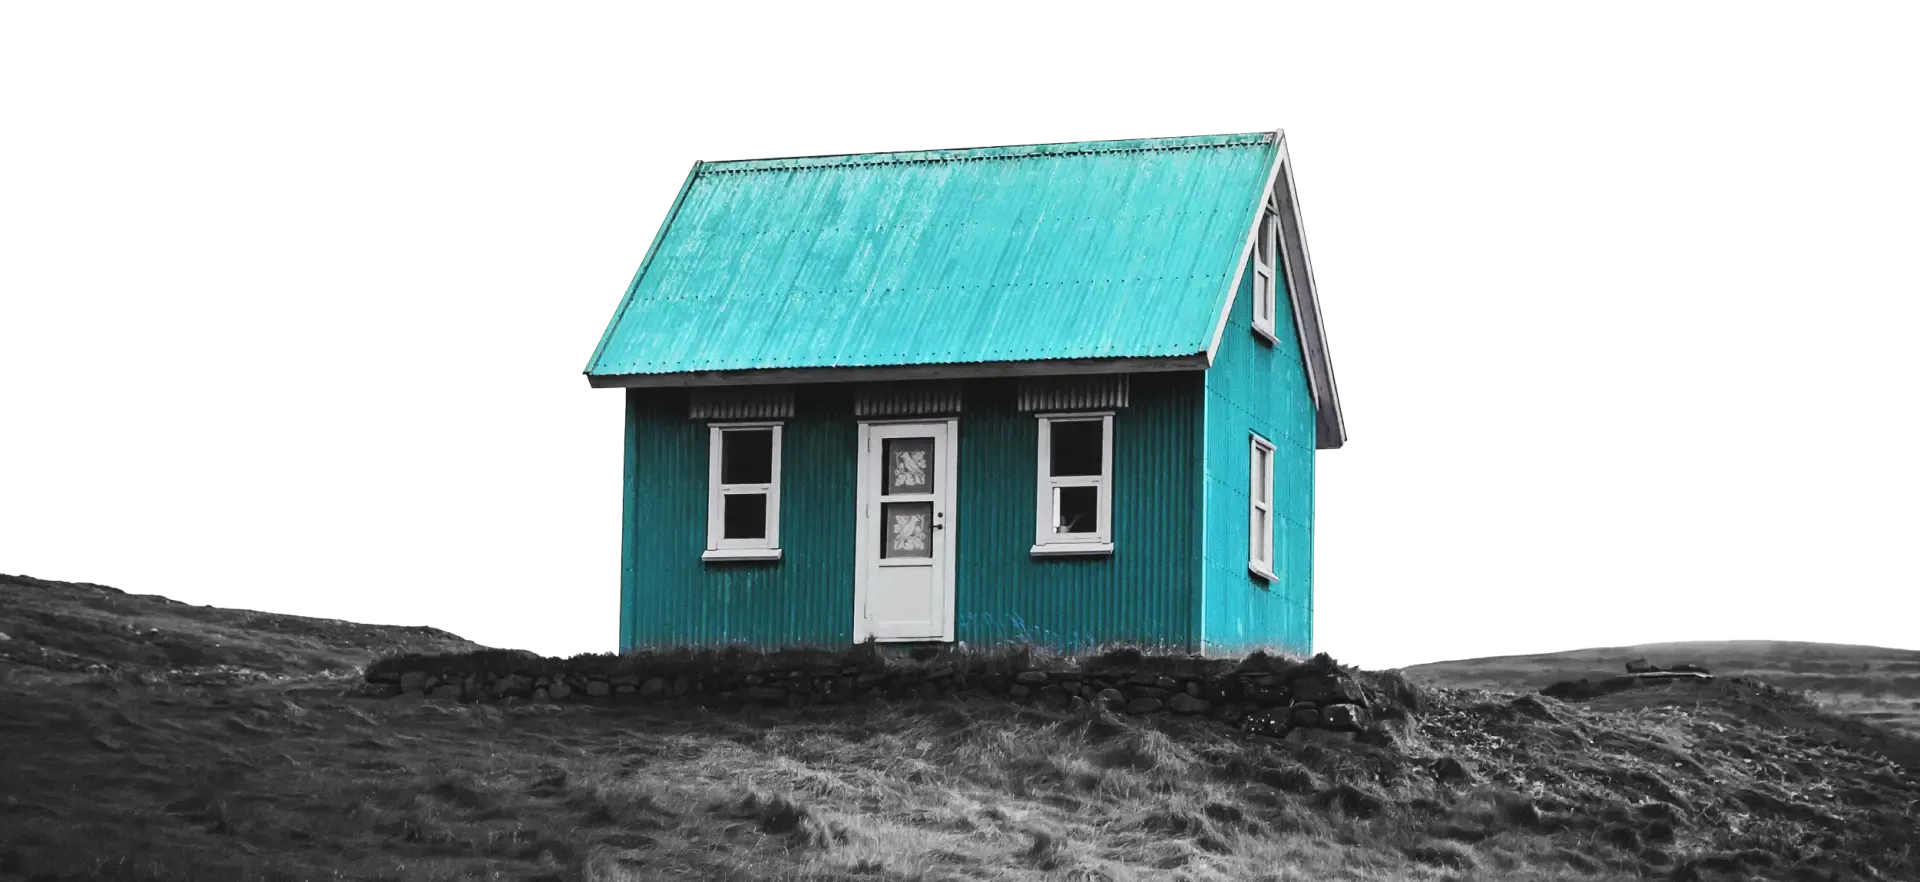 PlusHolidays blue house background